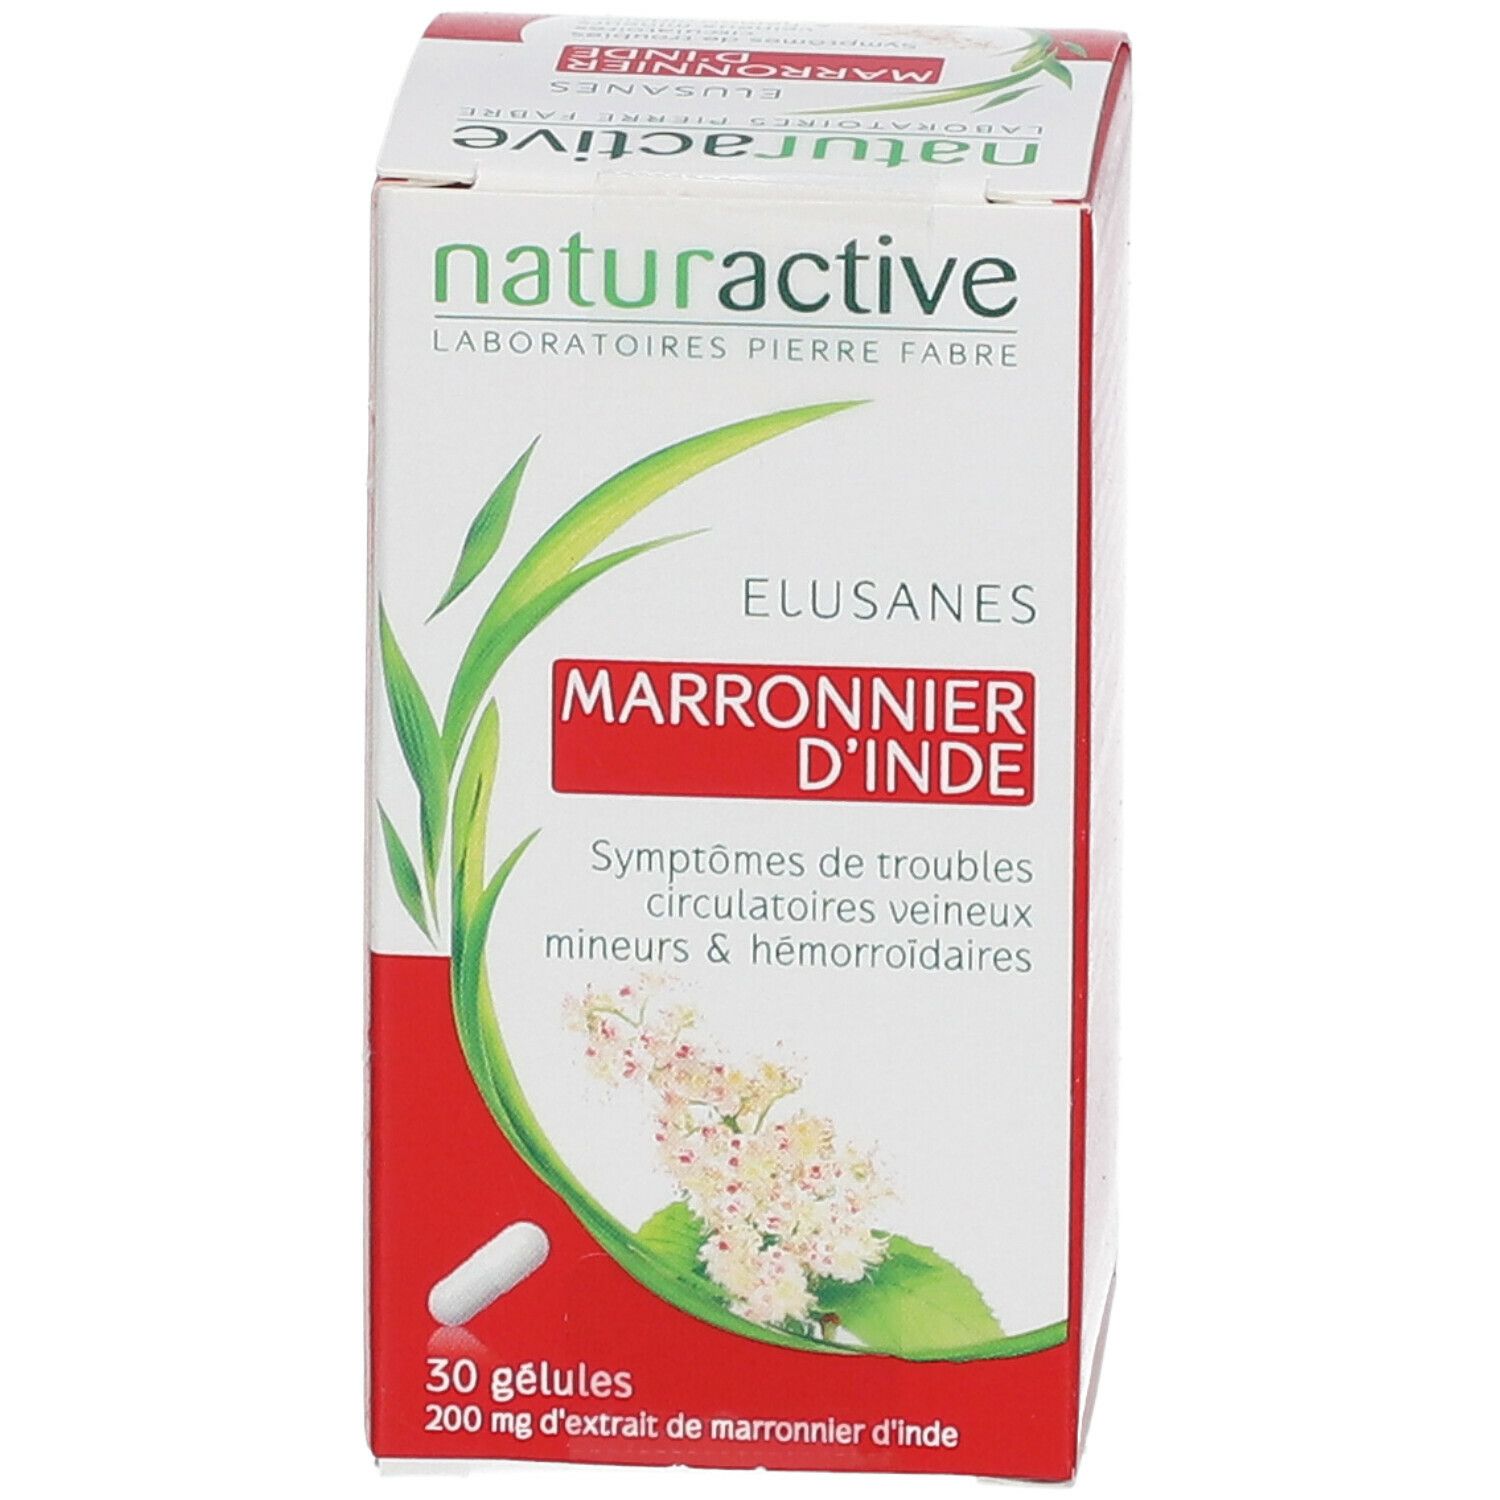 Naturactive ELUSANES Marronnier d’inde